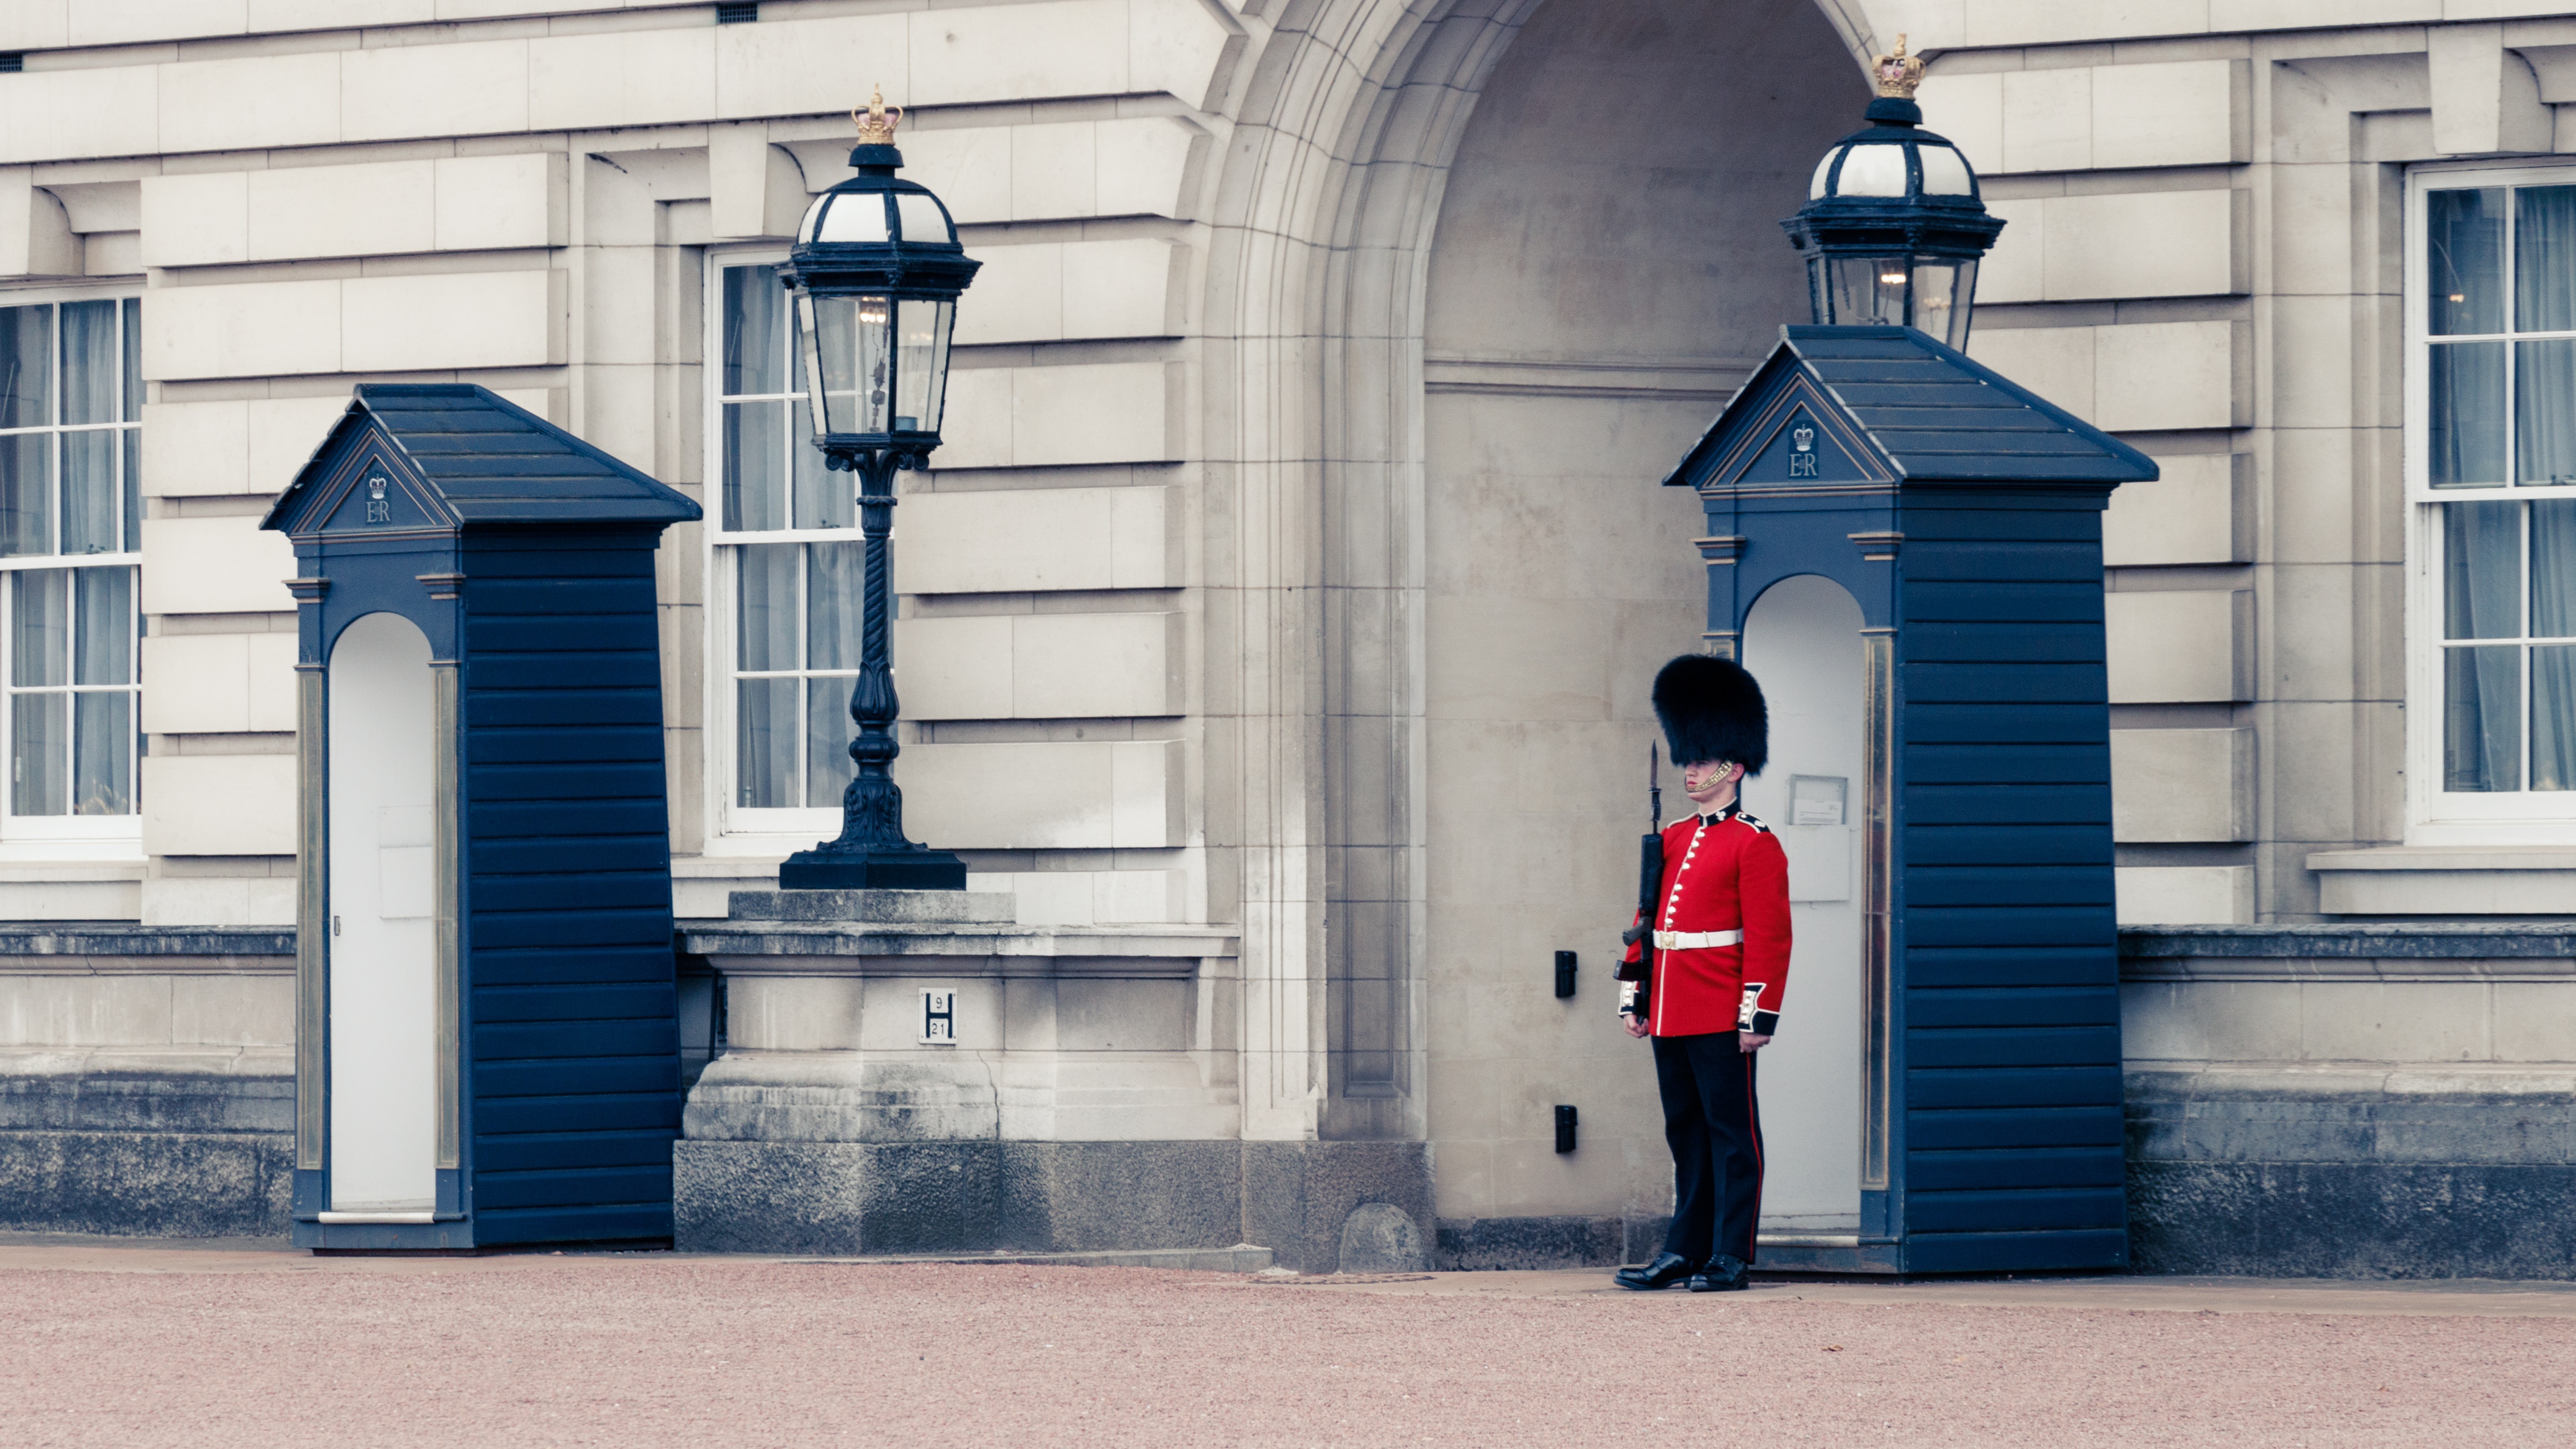 Que hacer en Londres Buckingham palace